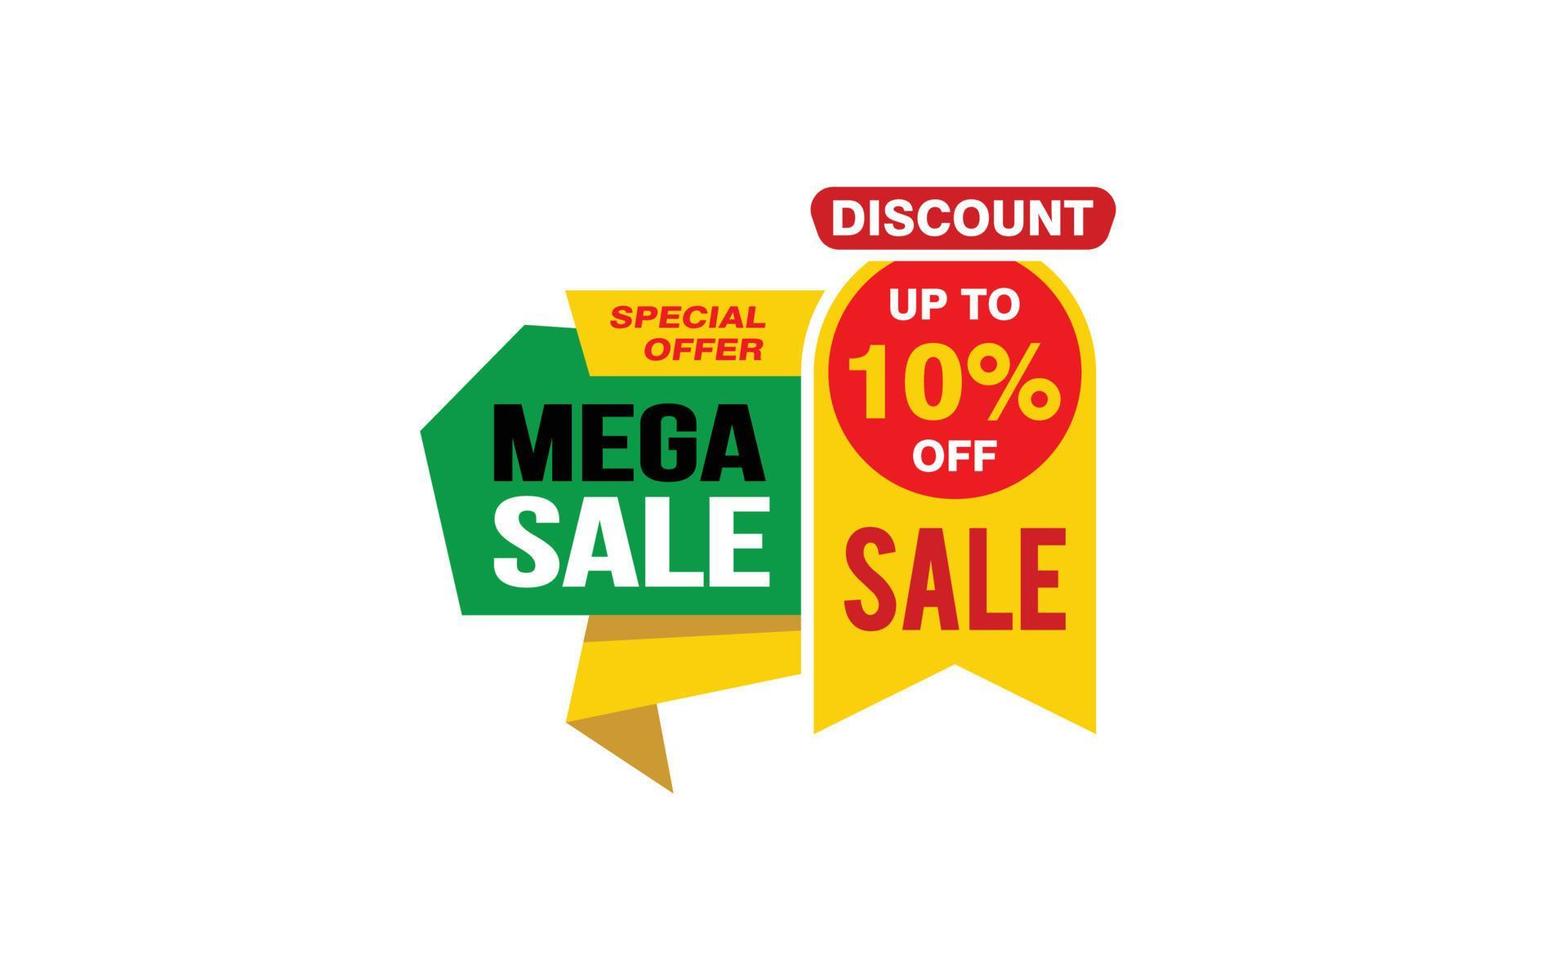 Oferta de mega venda de 10%, liberação, layout de banner de promoção com estilo de adesivo. vetor